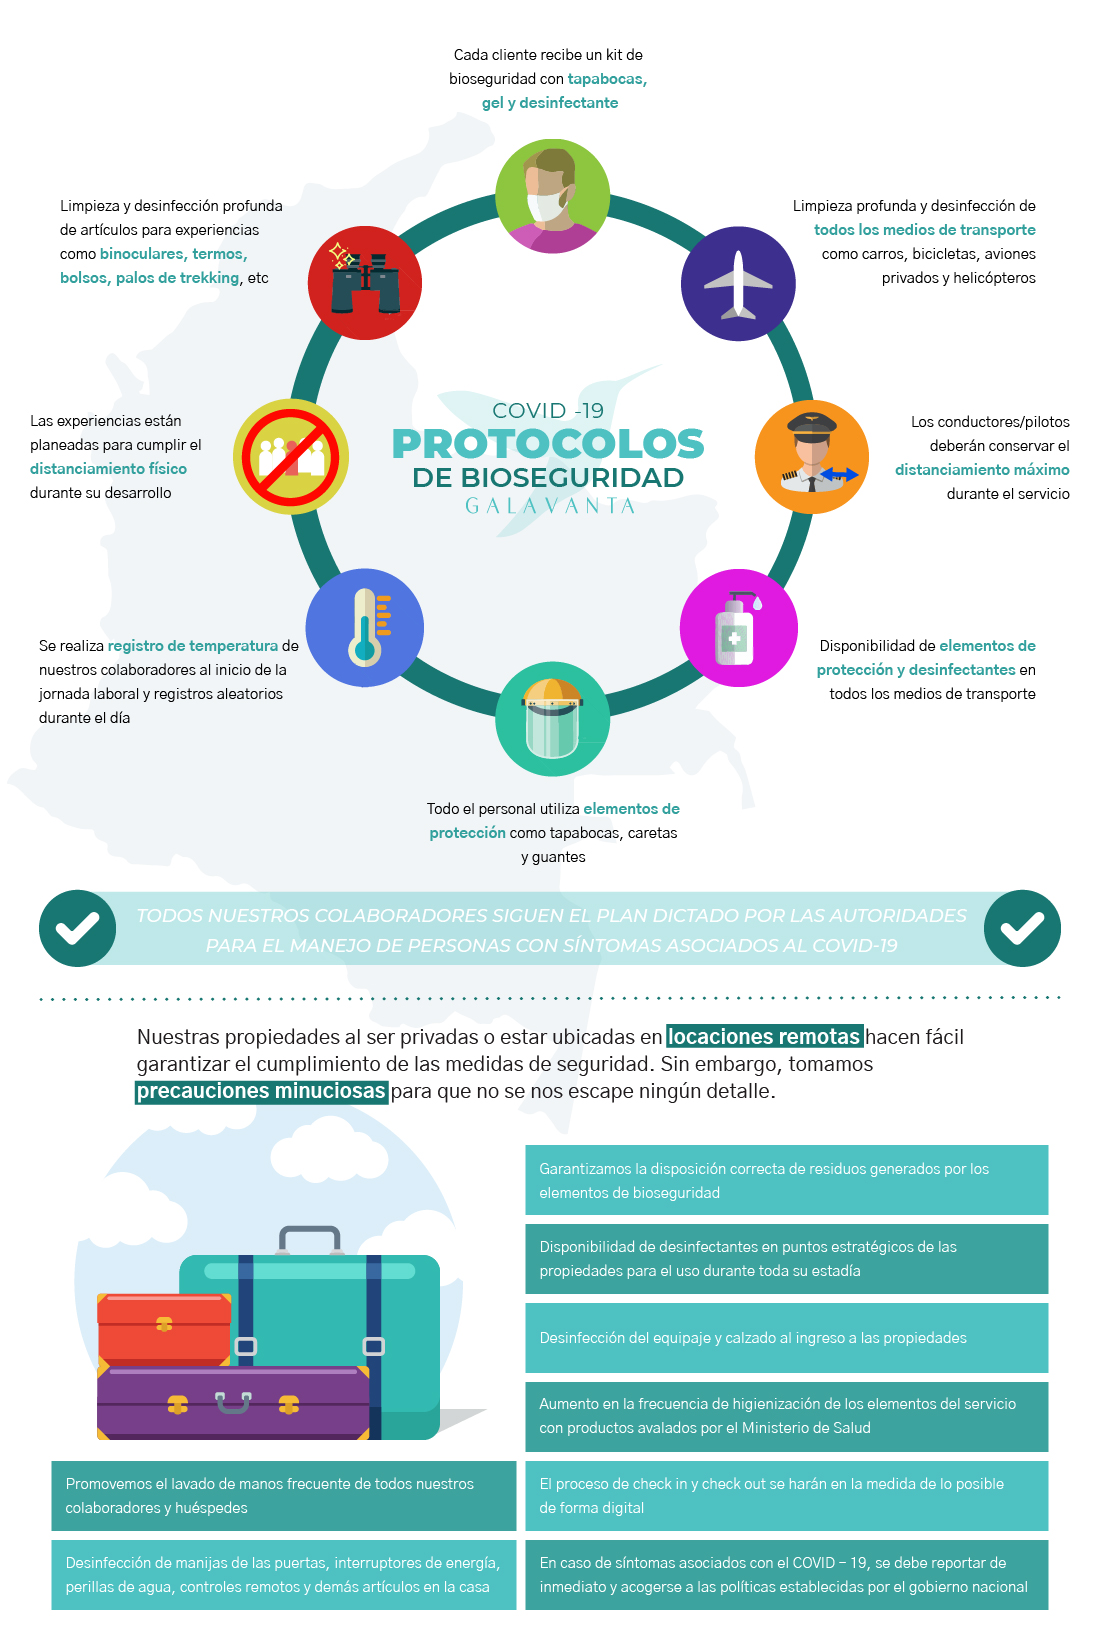 Infographic Bioseguridad Covid-19 Galavanta